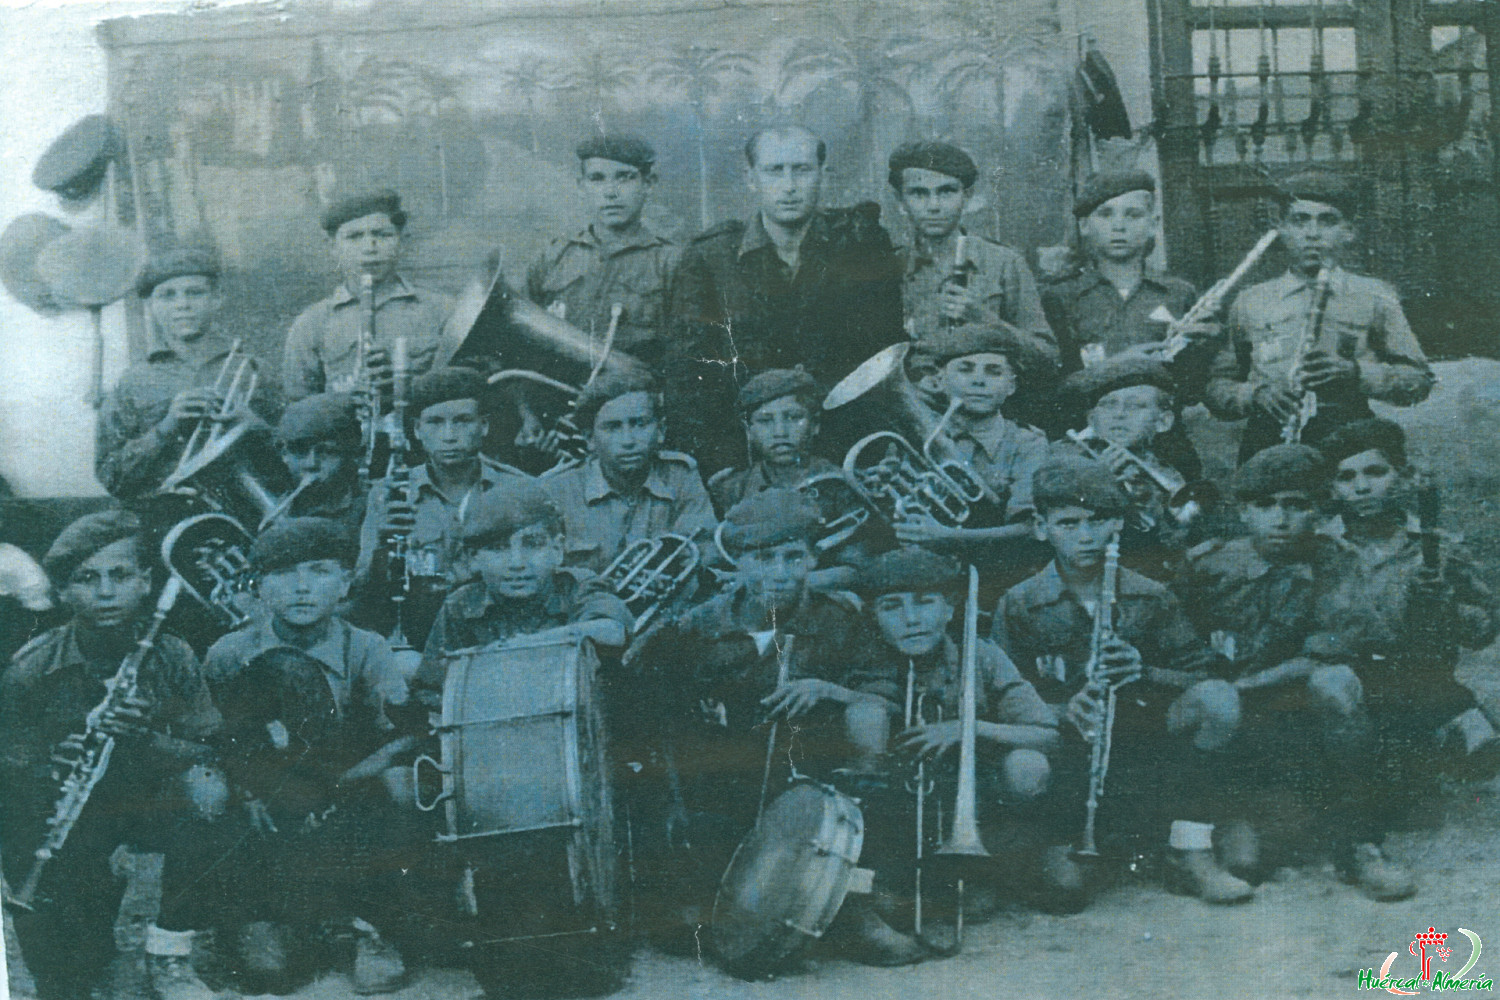 Banda de música en Huércal de Almería